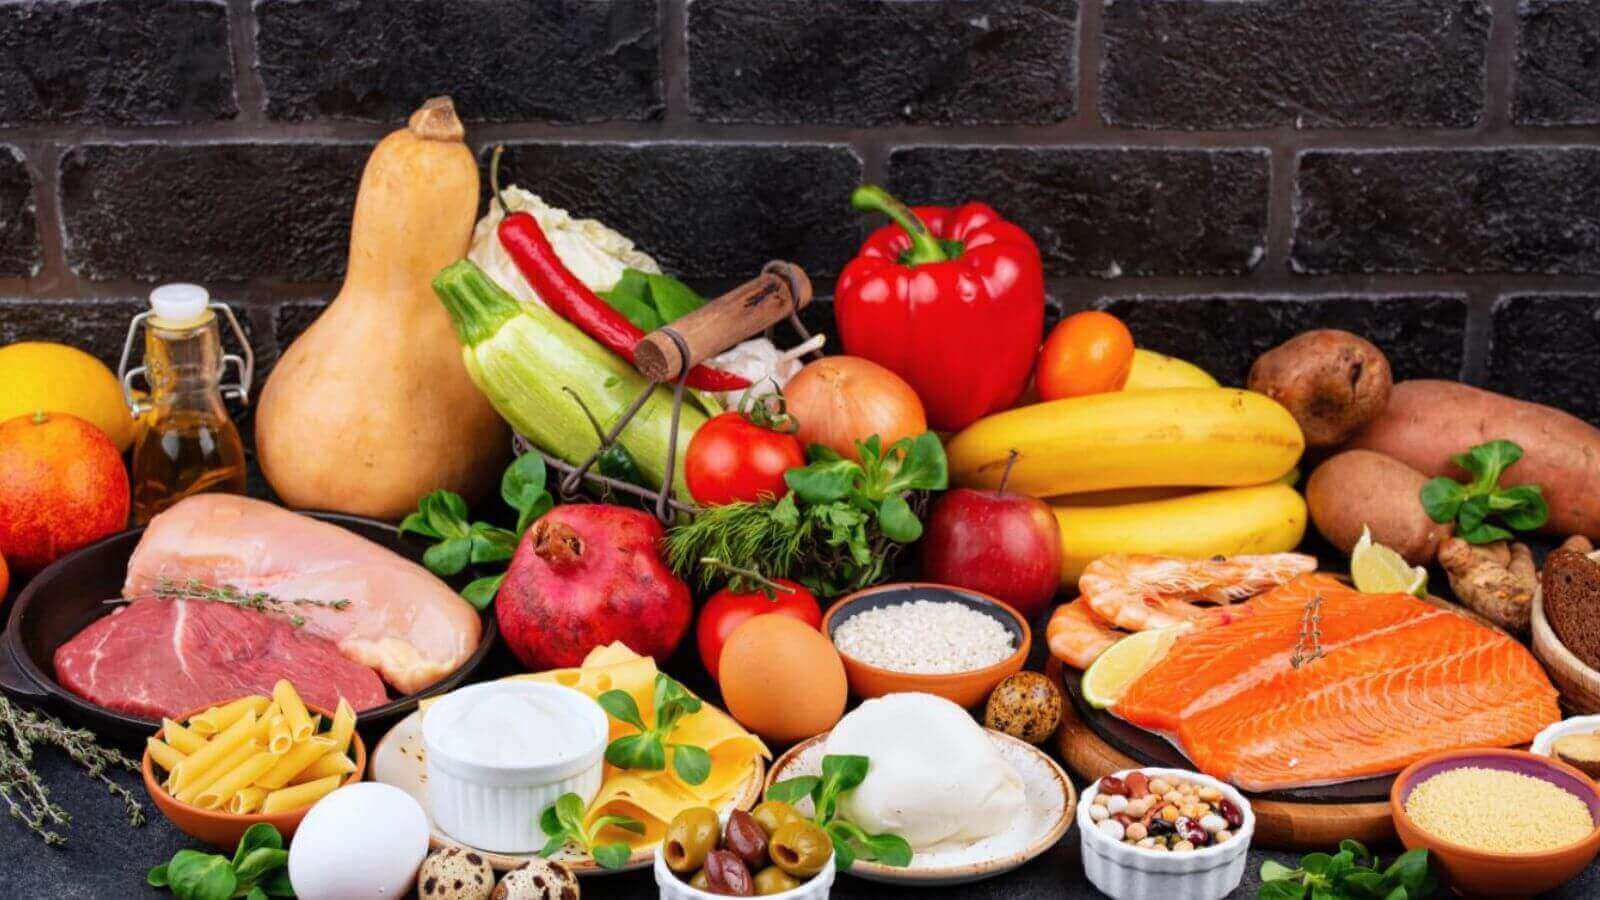 Mesa com alimentos frescos e variados, incluindo frutas, vegetais, carnes, peixes e grãos, destacando uma dieta balanceada e saudável.